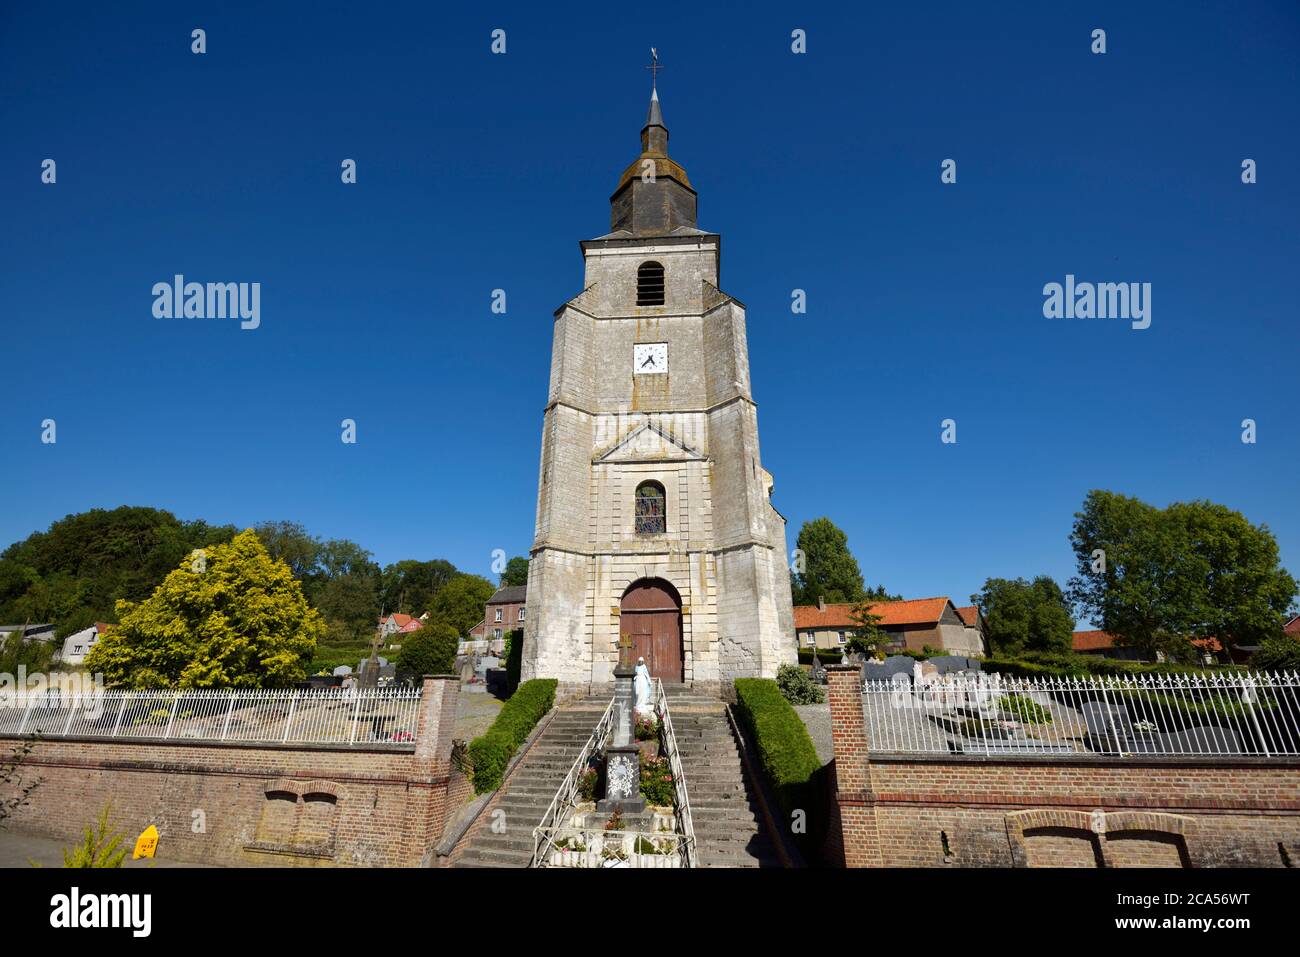 France, Pas de Calais, Buire au Bois, church Notre Dame of Buire au Bois with built in 1750-1771 Stock Photo